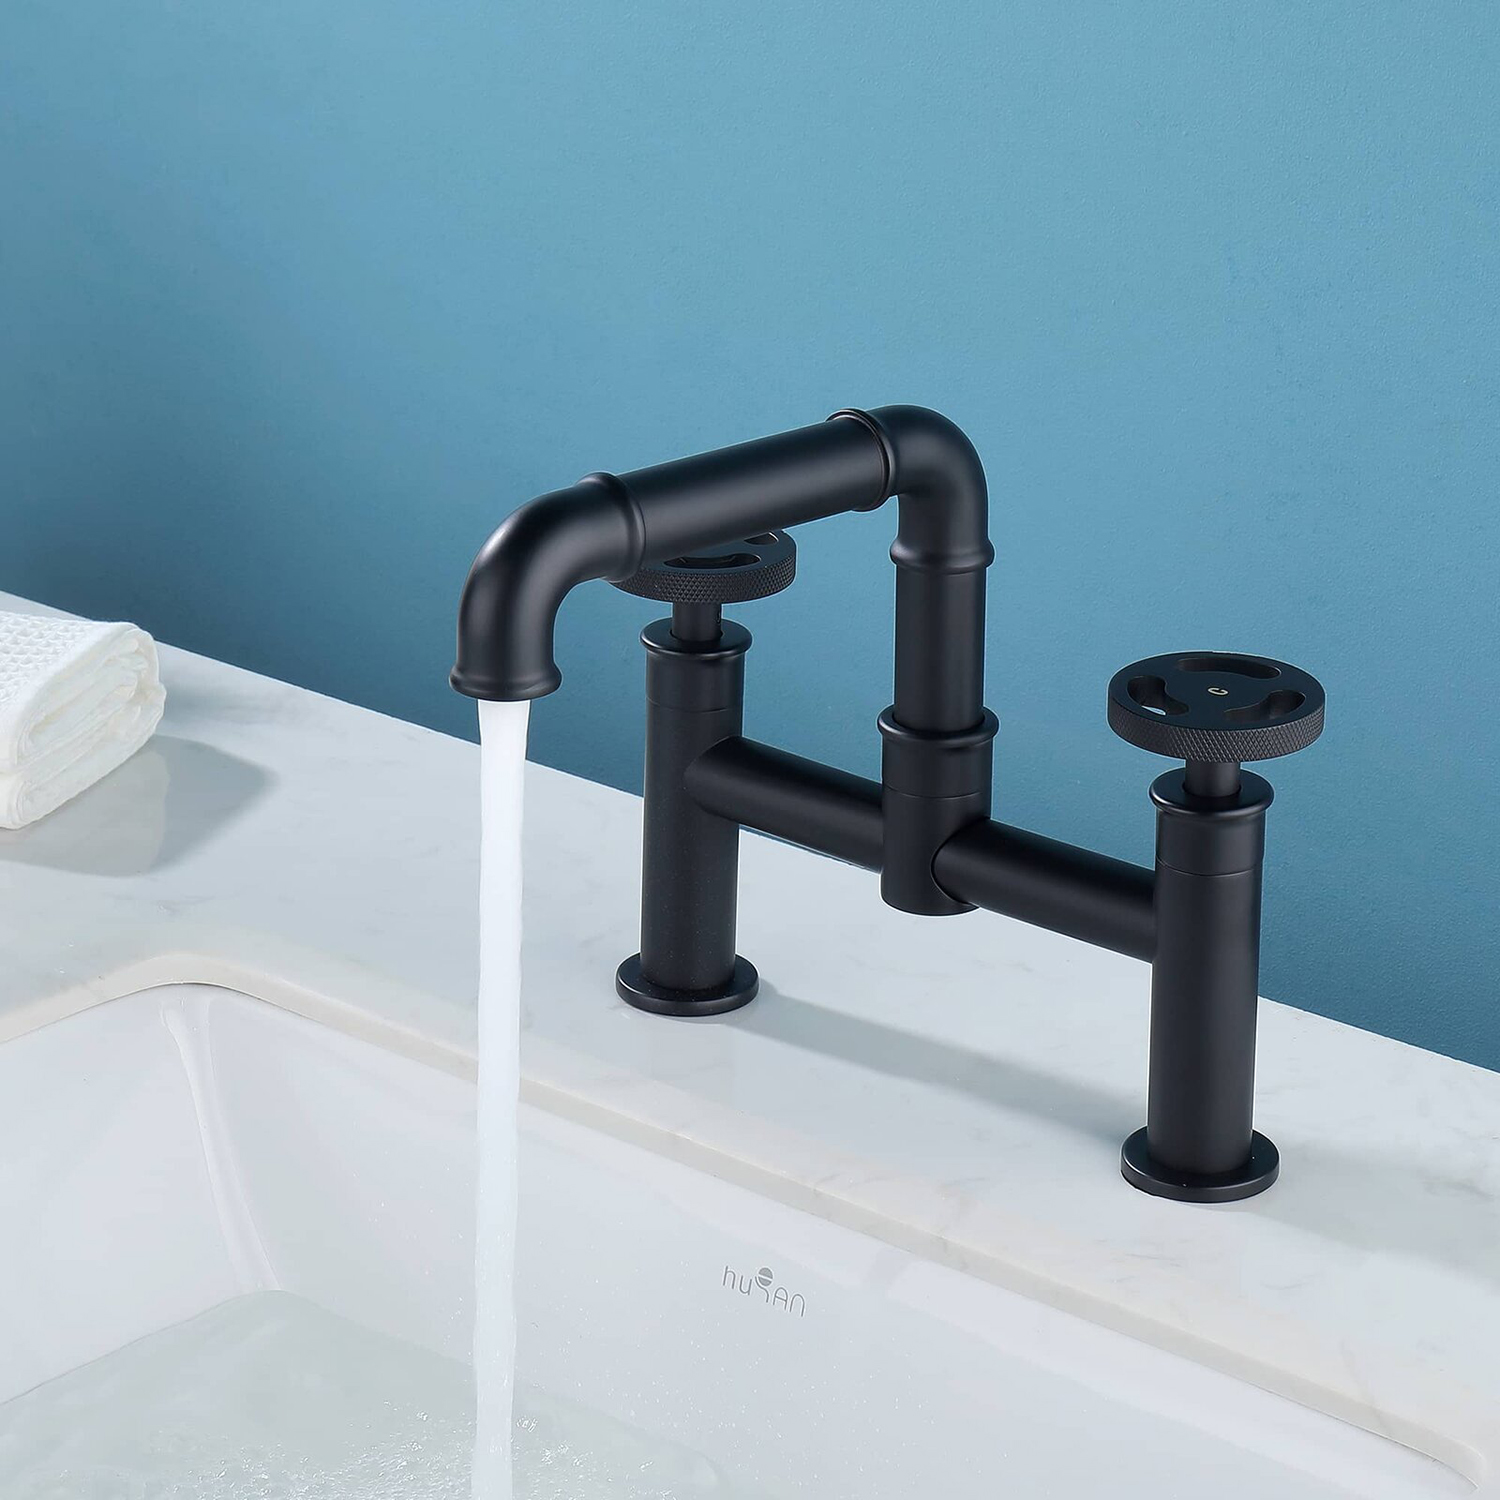 Aquacubic Bridge Faucet 2 Hole, 8-Inch Kitchen Sink Faucet 2 Handle Industrial Pipe Bathroom Vessel Sink Faucet